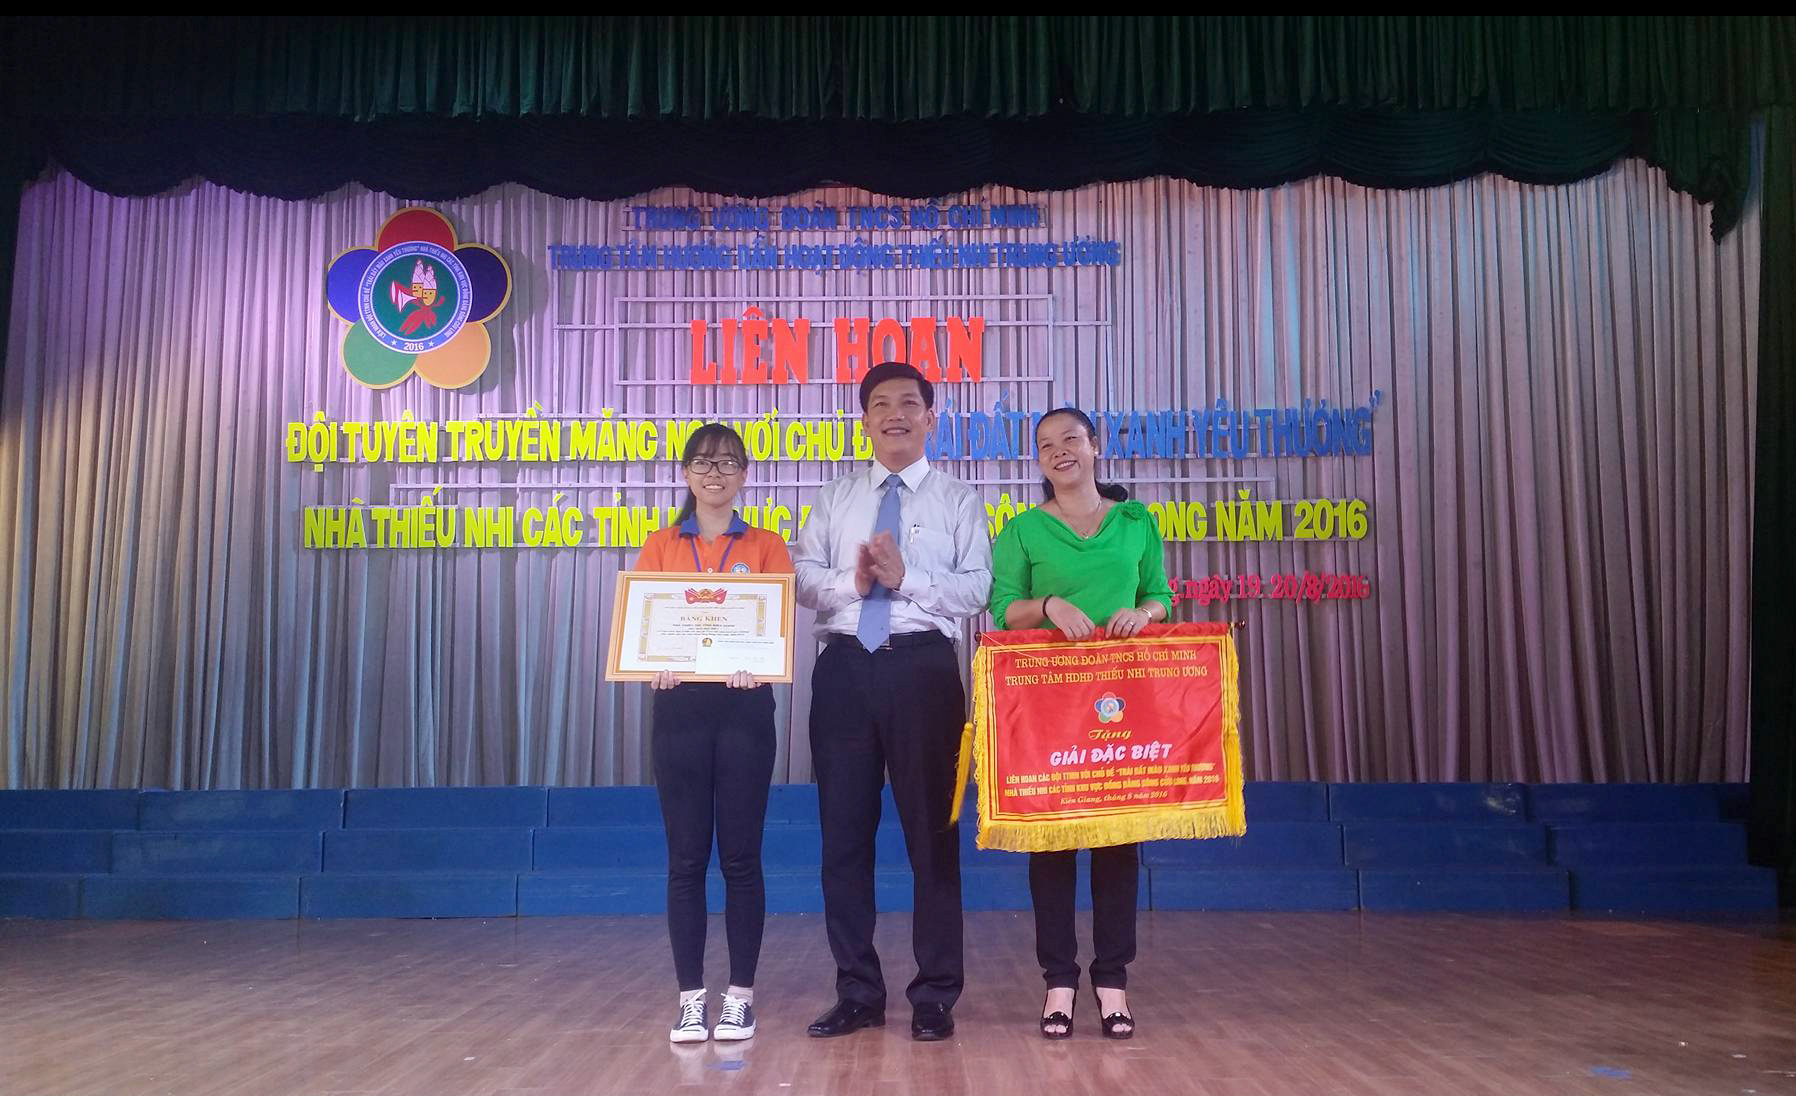 Bế mạc Liên hoan Đội tuyên truyền măng non với chủ đề “Trái đất màu xanh yêu thương ” Nhà thiếu nhi các tỉnh khu vực Đồng bằng sông Cửu Long, năm 2016